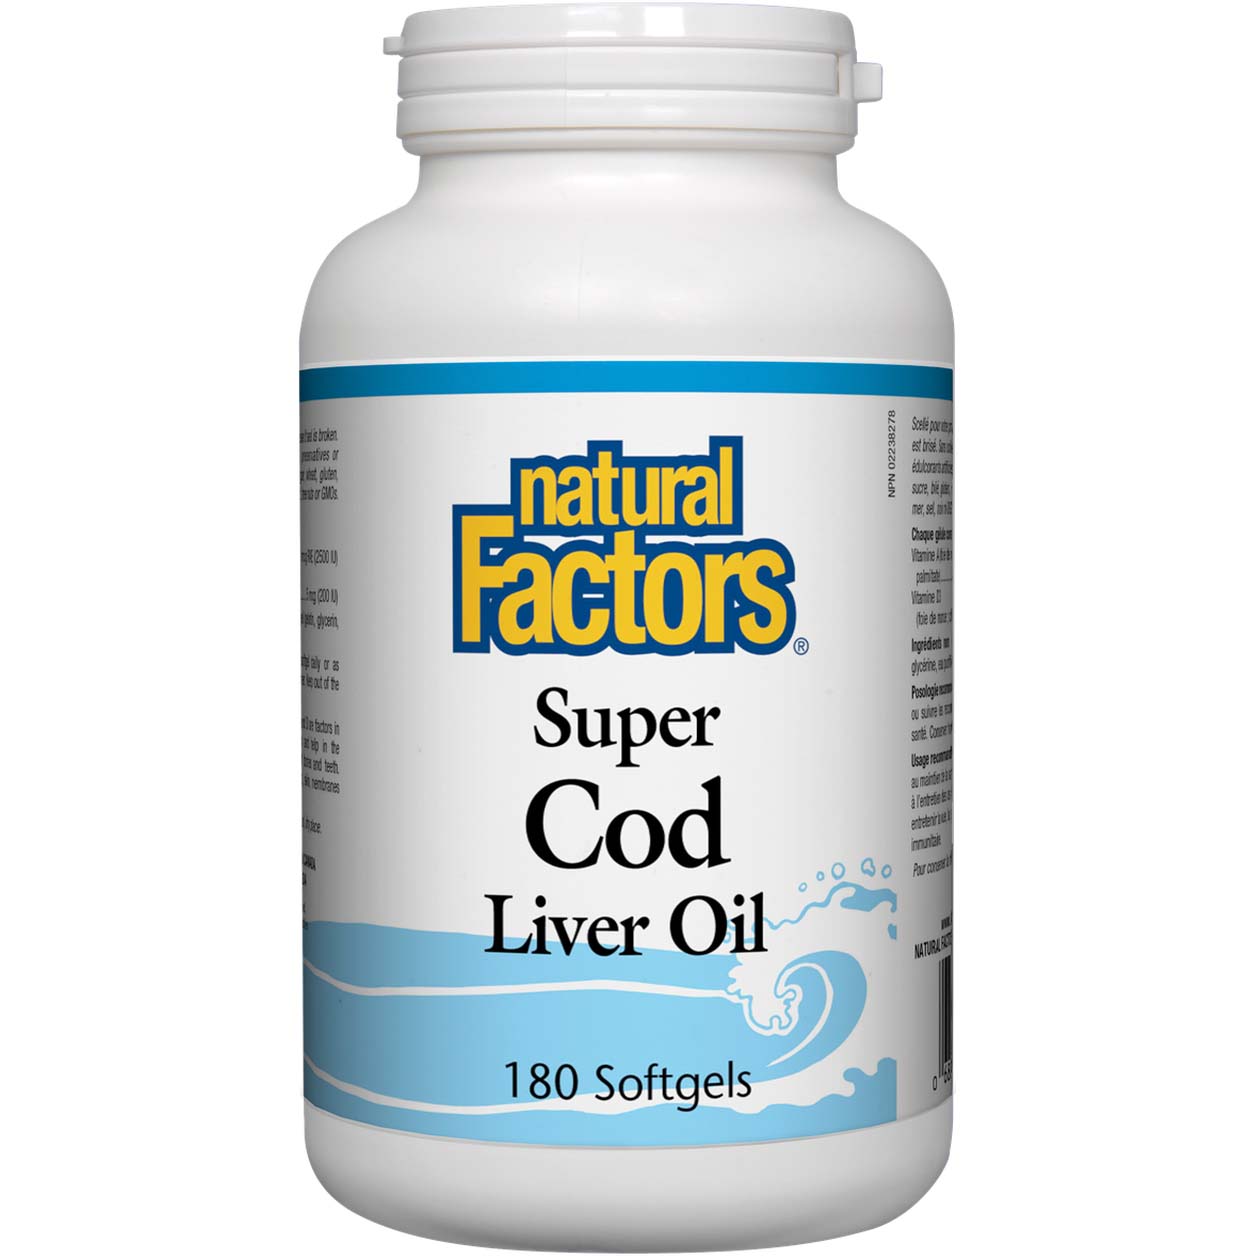 Natural Factors Super Cod Liver Oil, 180 Softgels